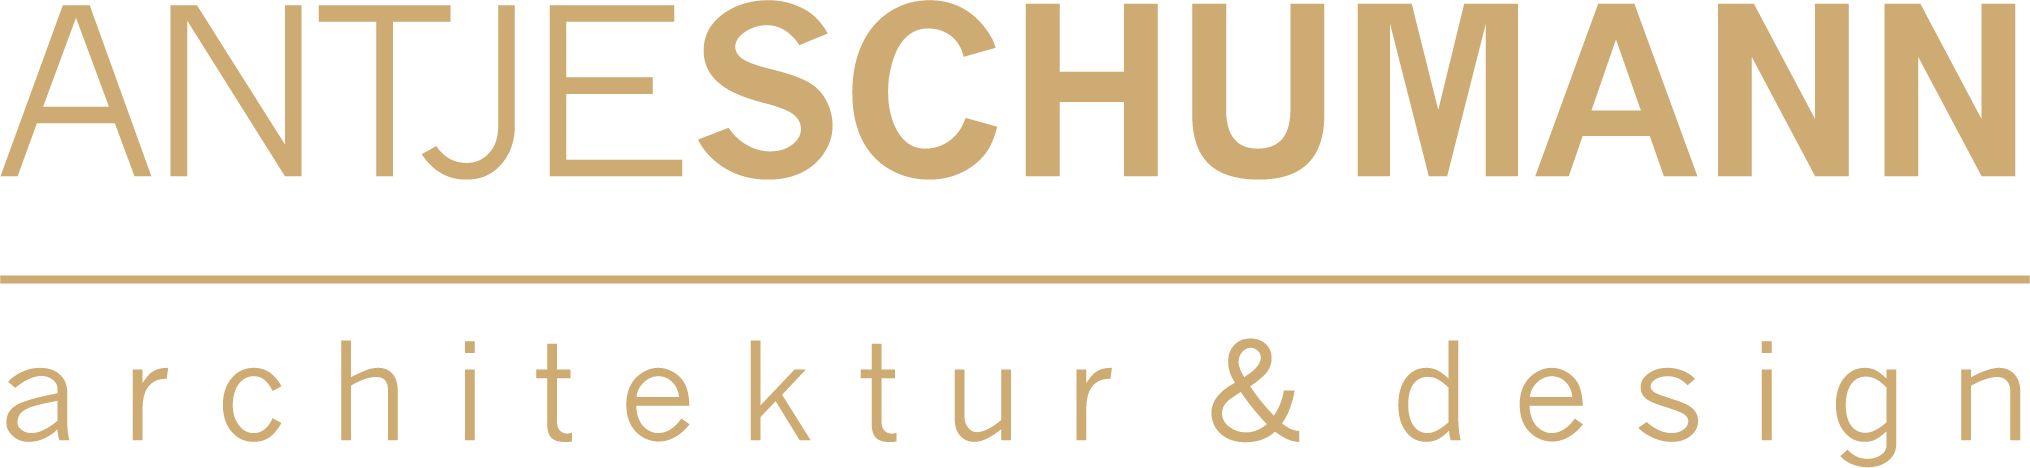 Antje Schumann Architektur GmbH Logo